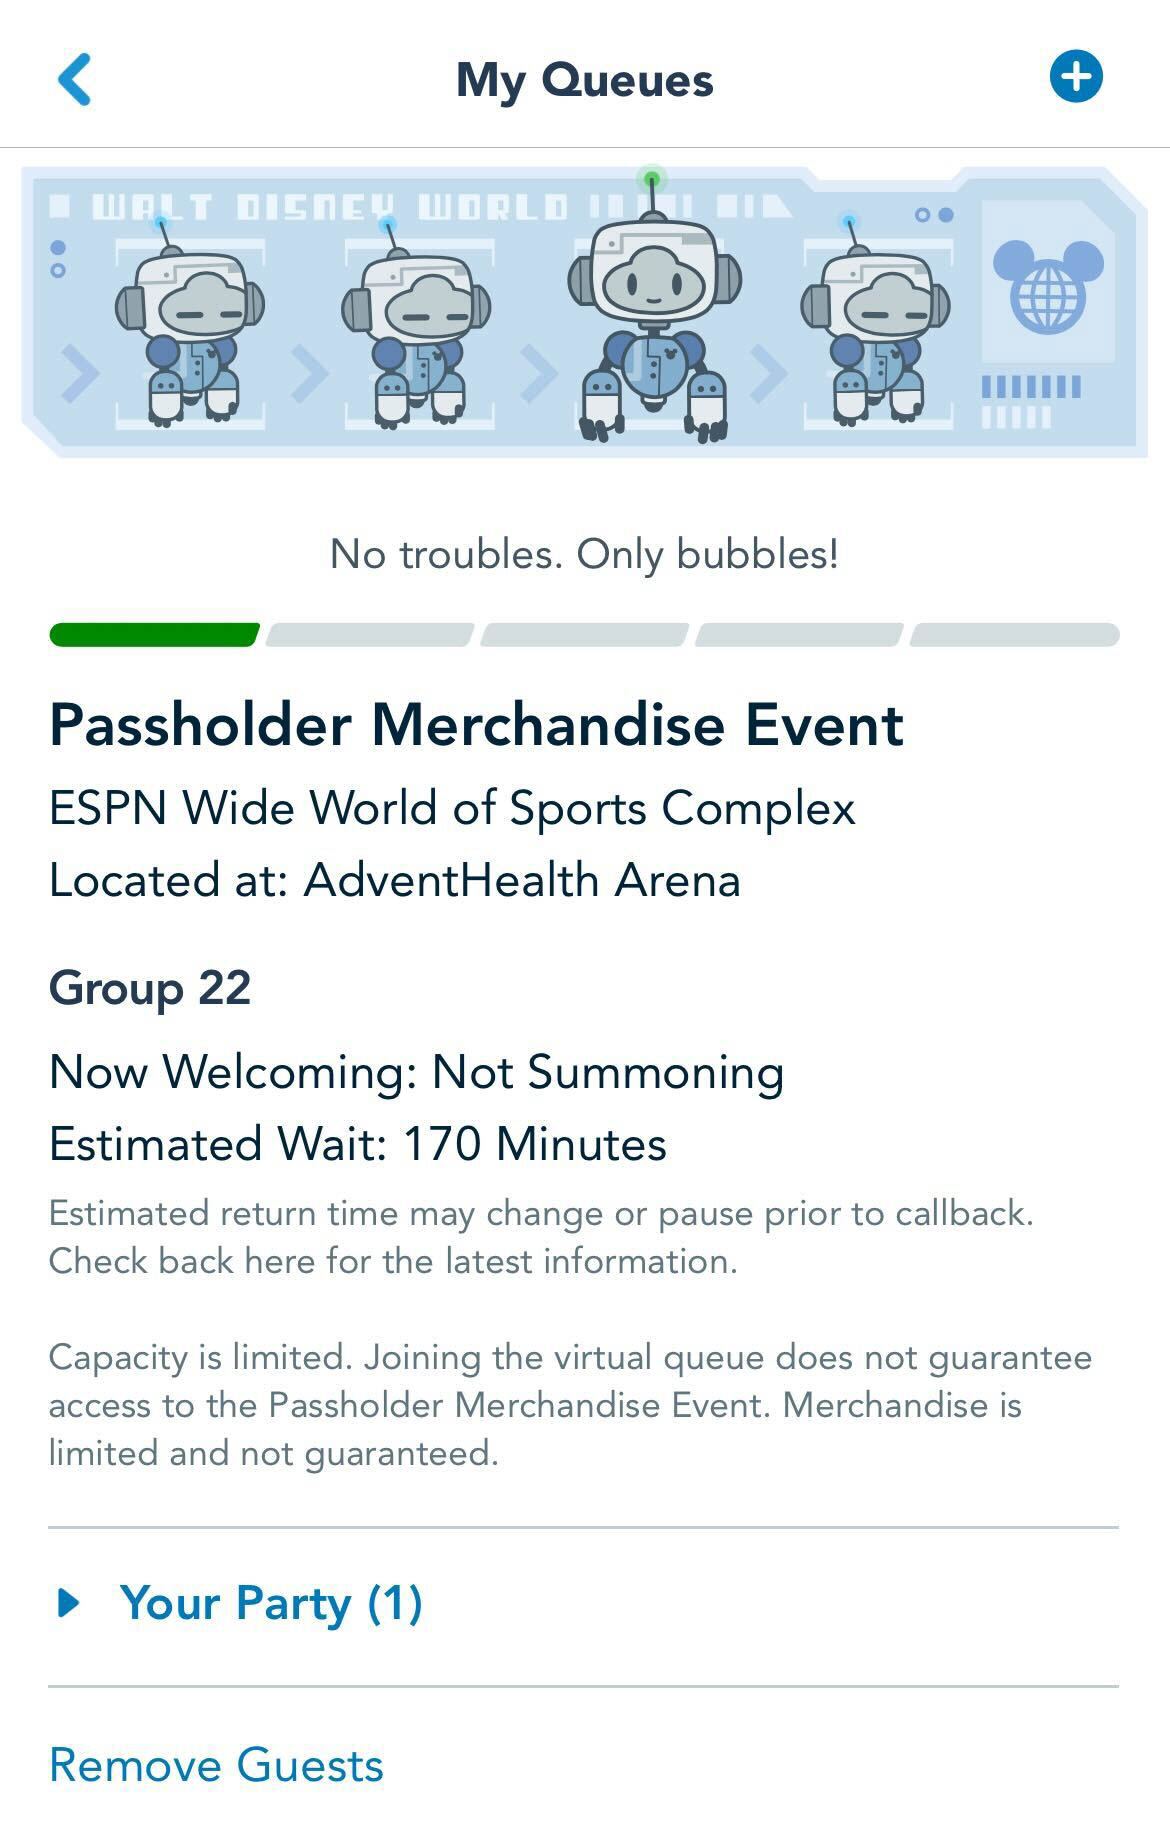 Annual Passholder merch event virtual queue